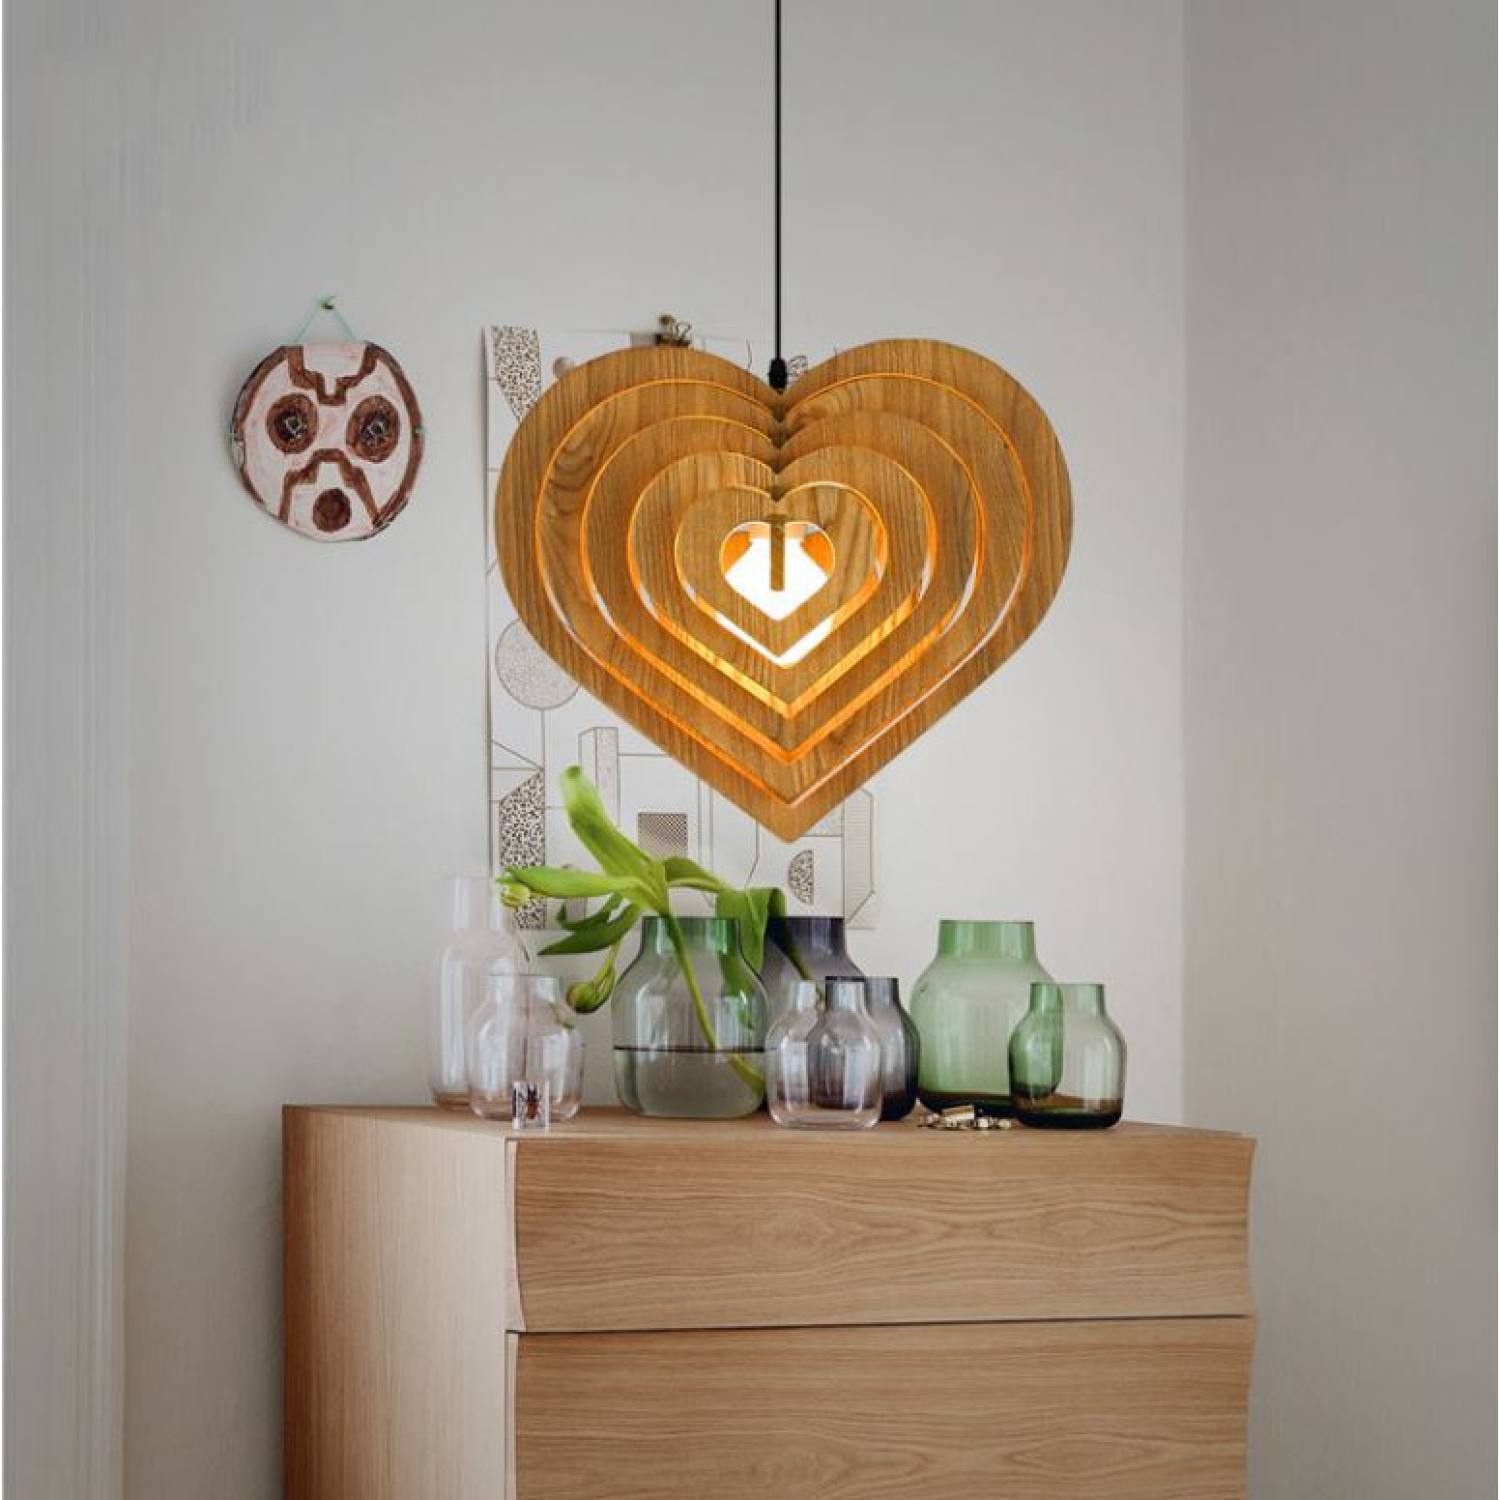 Đèn gỗ trái tim DG059 - Đèn gỗ thả trần trang trí nhà cửa, quán cafe